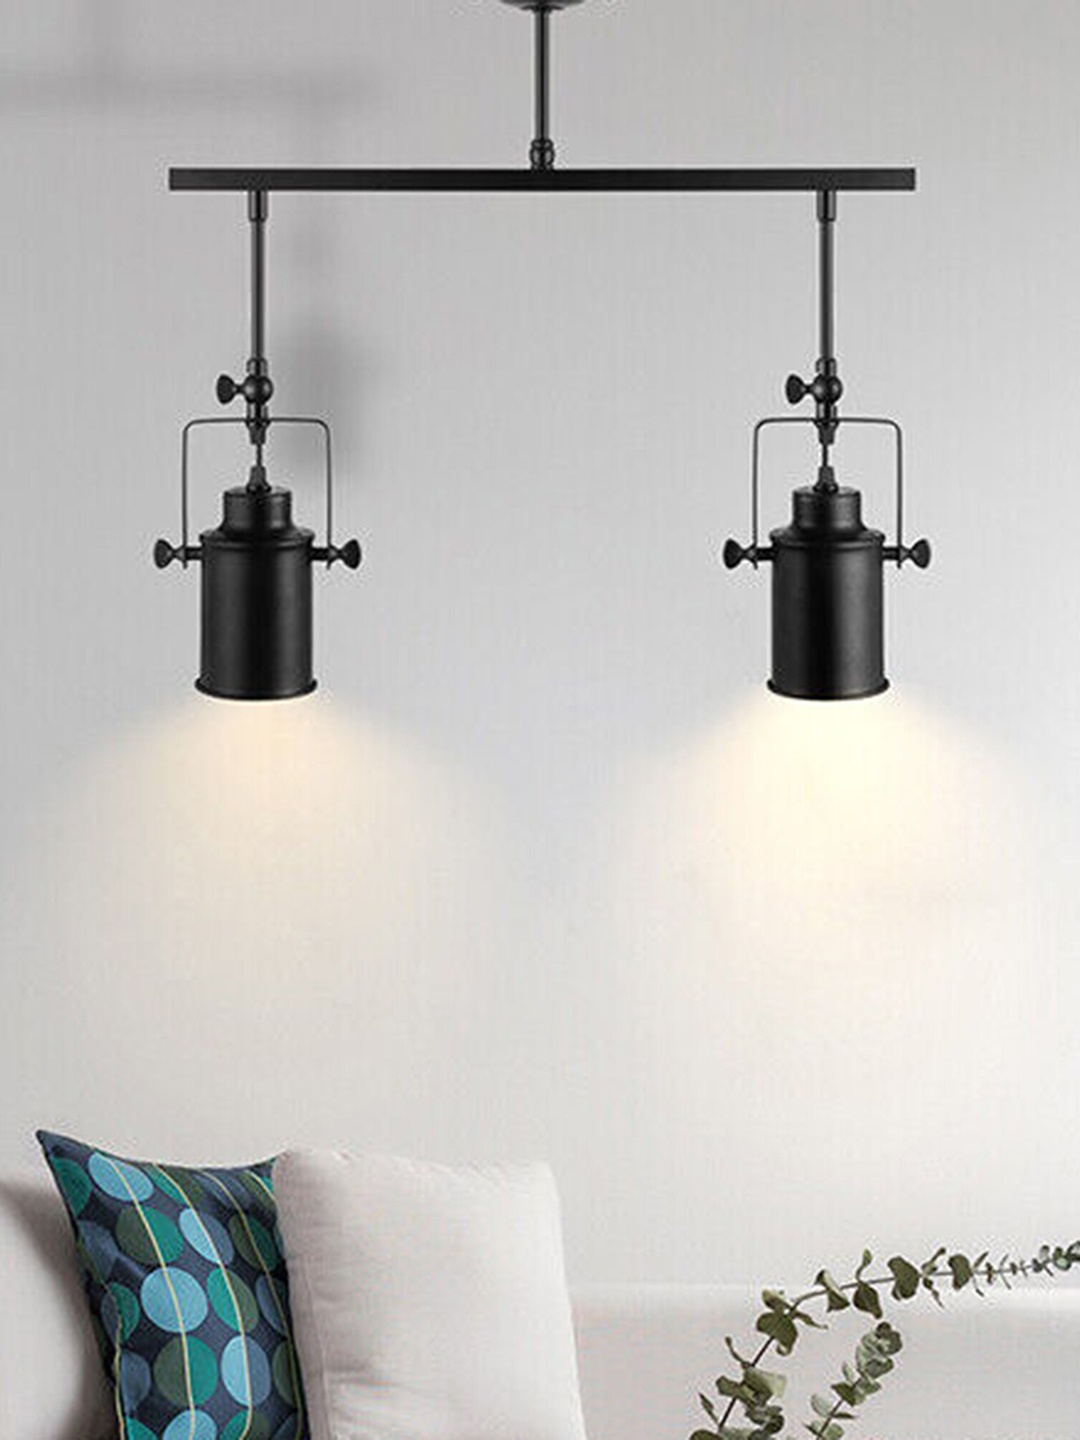 

Homesake Industrial Black Track Lighting Metal Ceiling Lamps